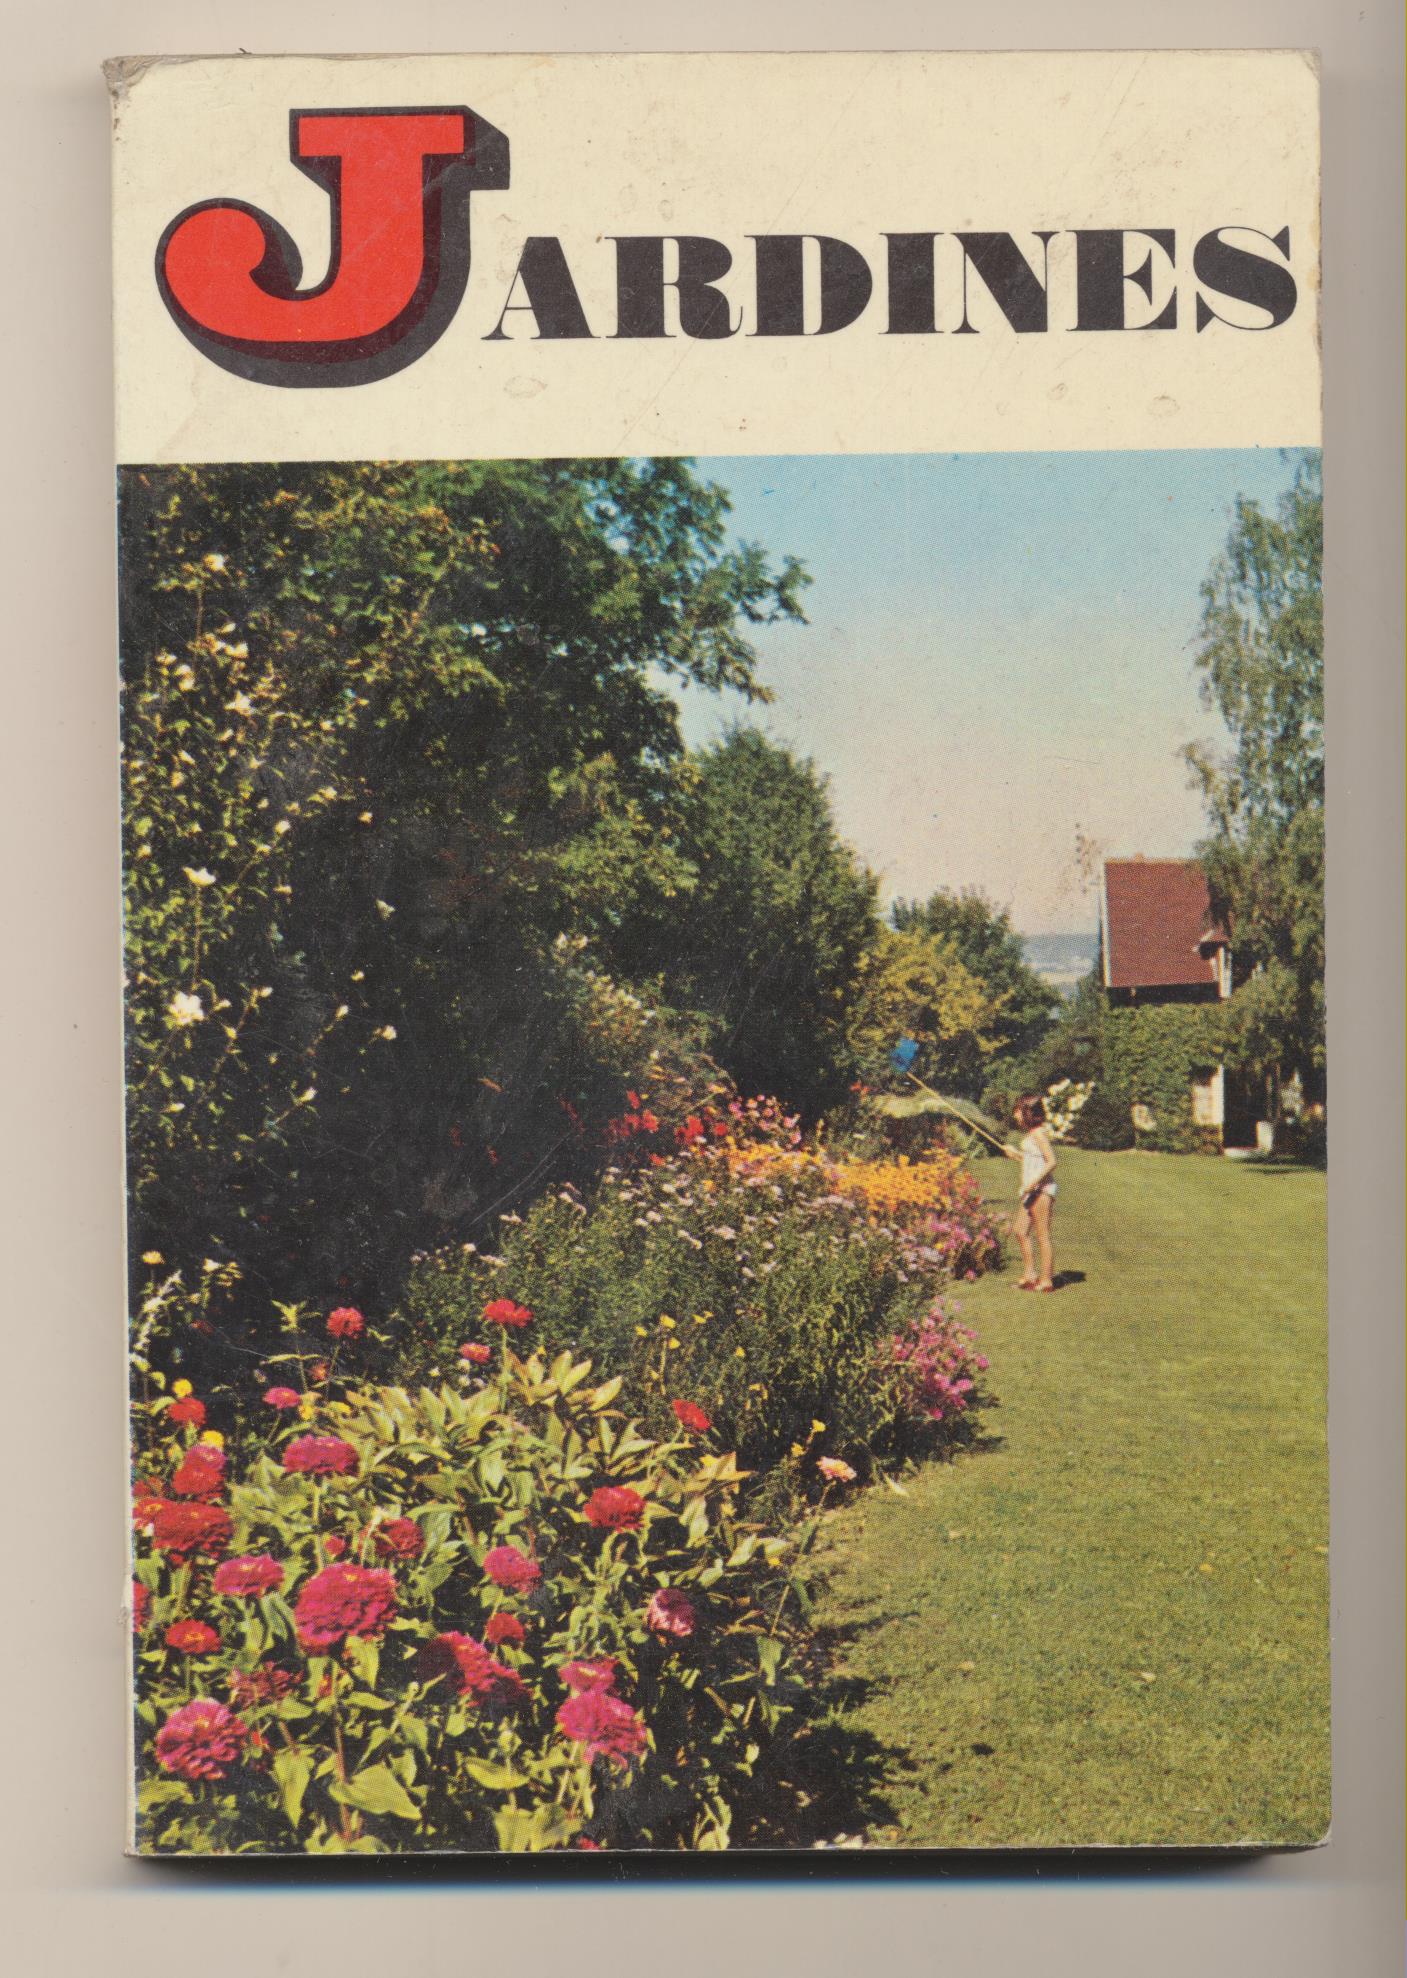 Jardines. 1970